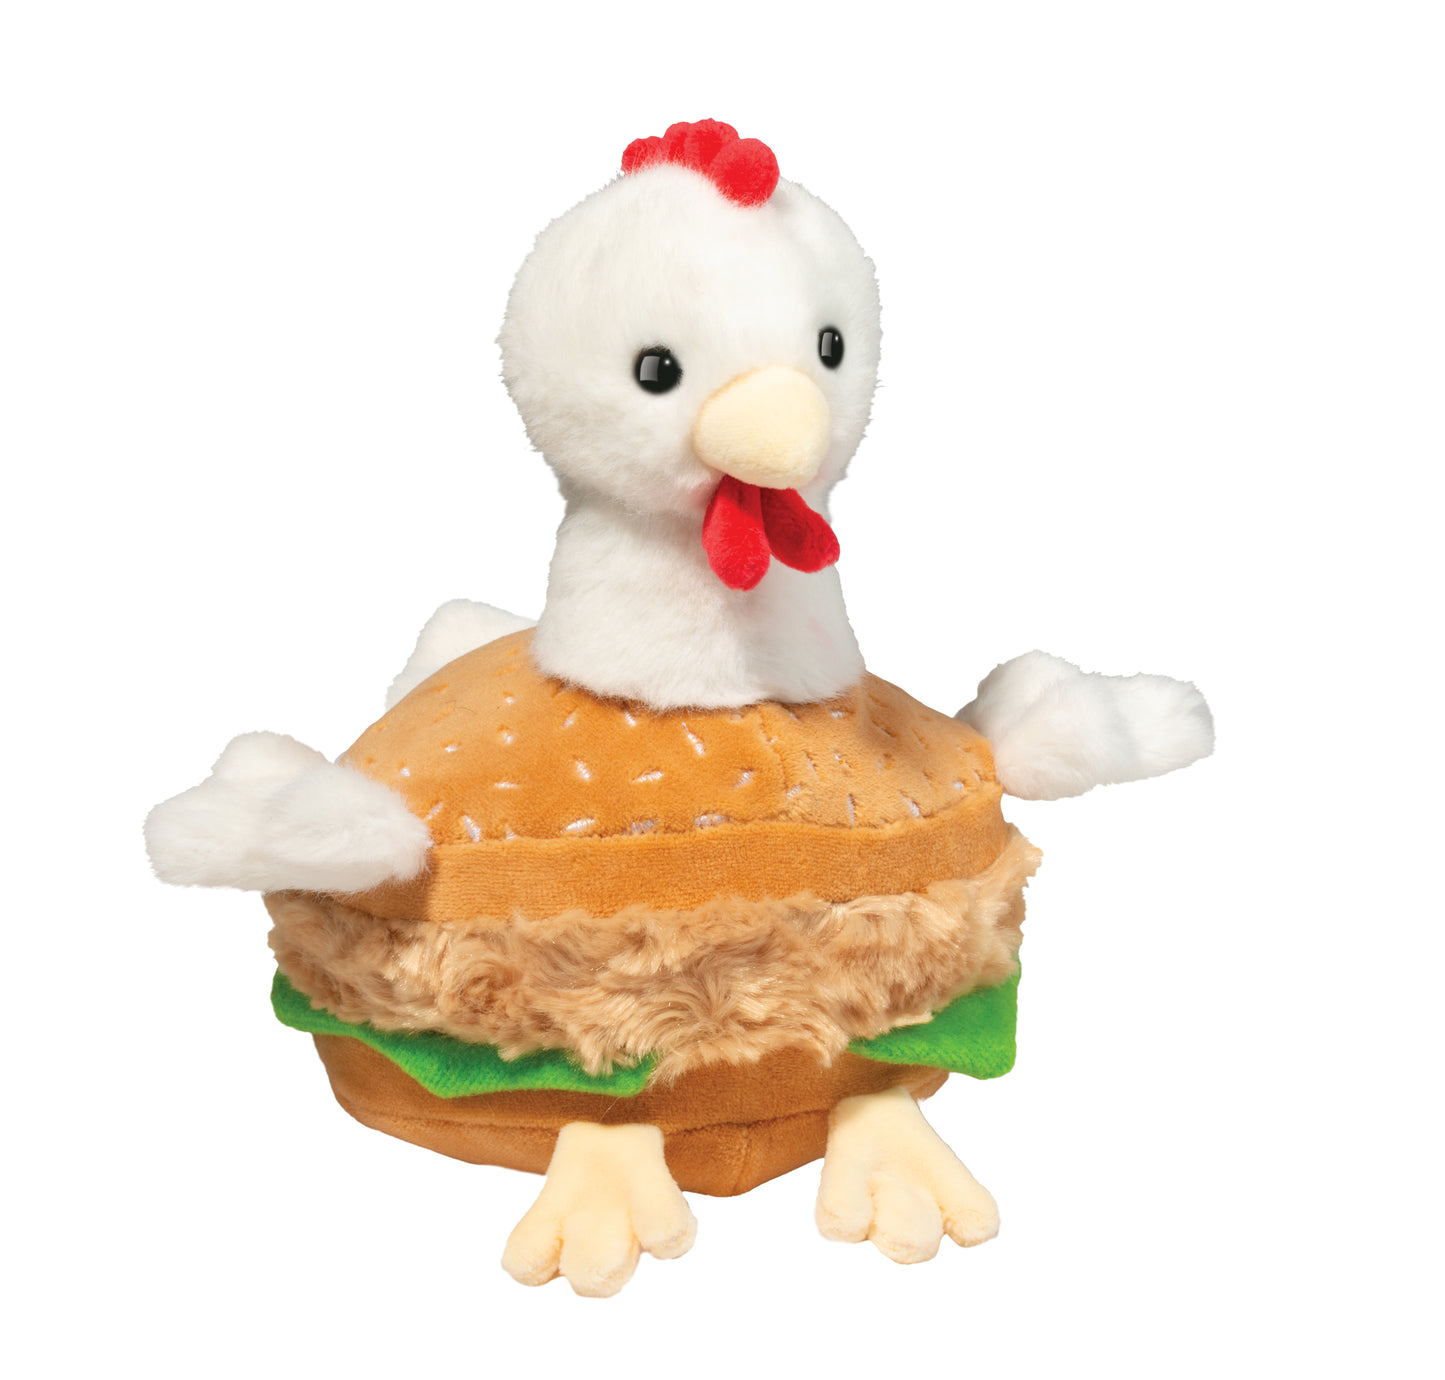 Chicken Sandwich - Macaroon